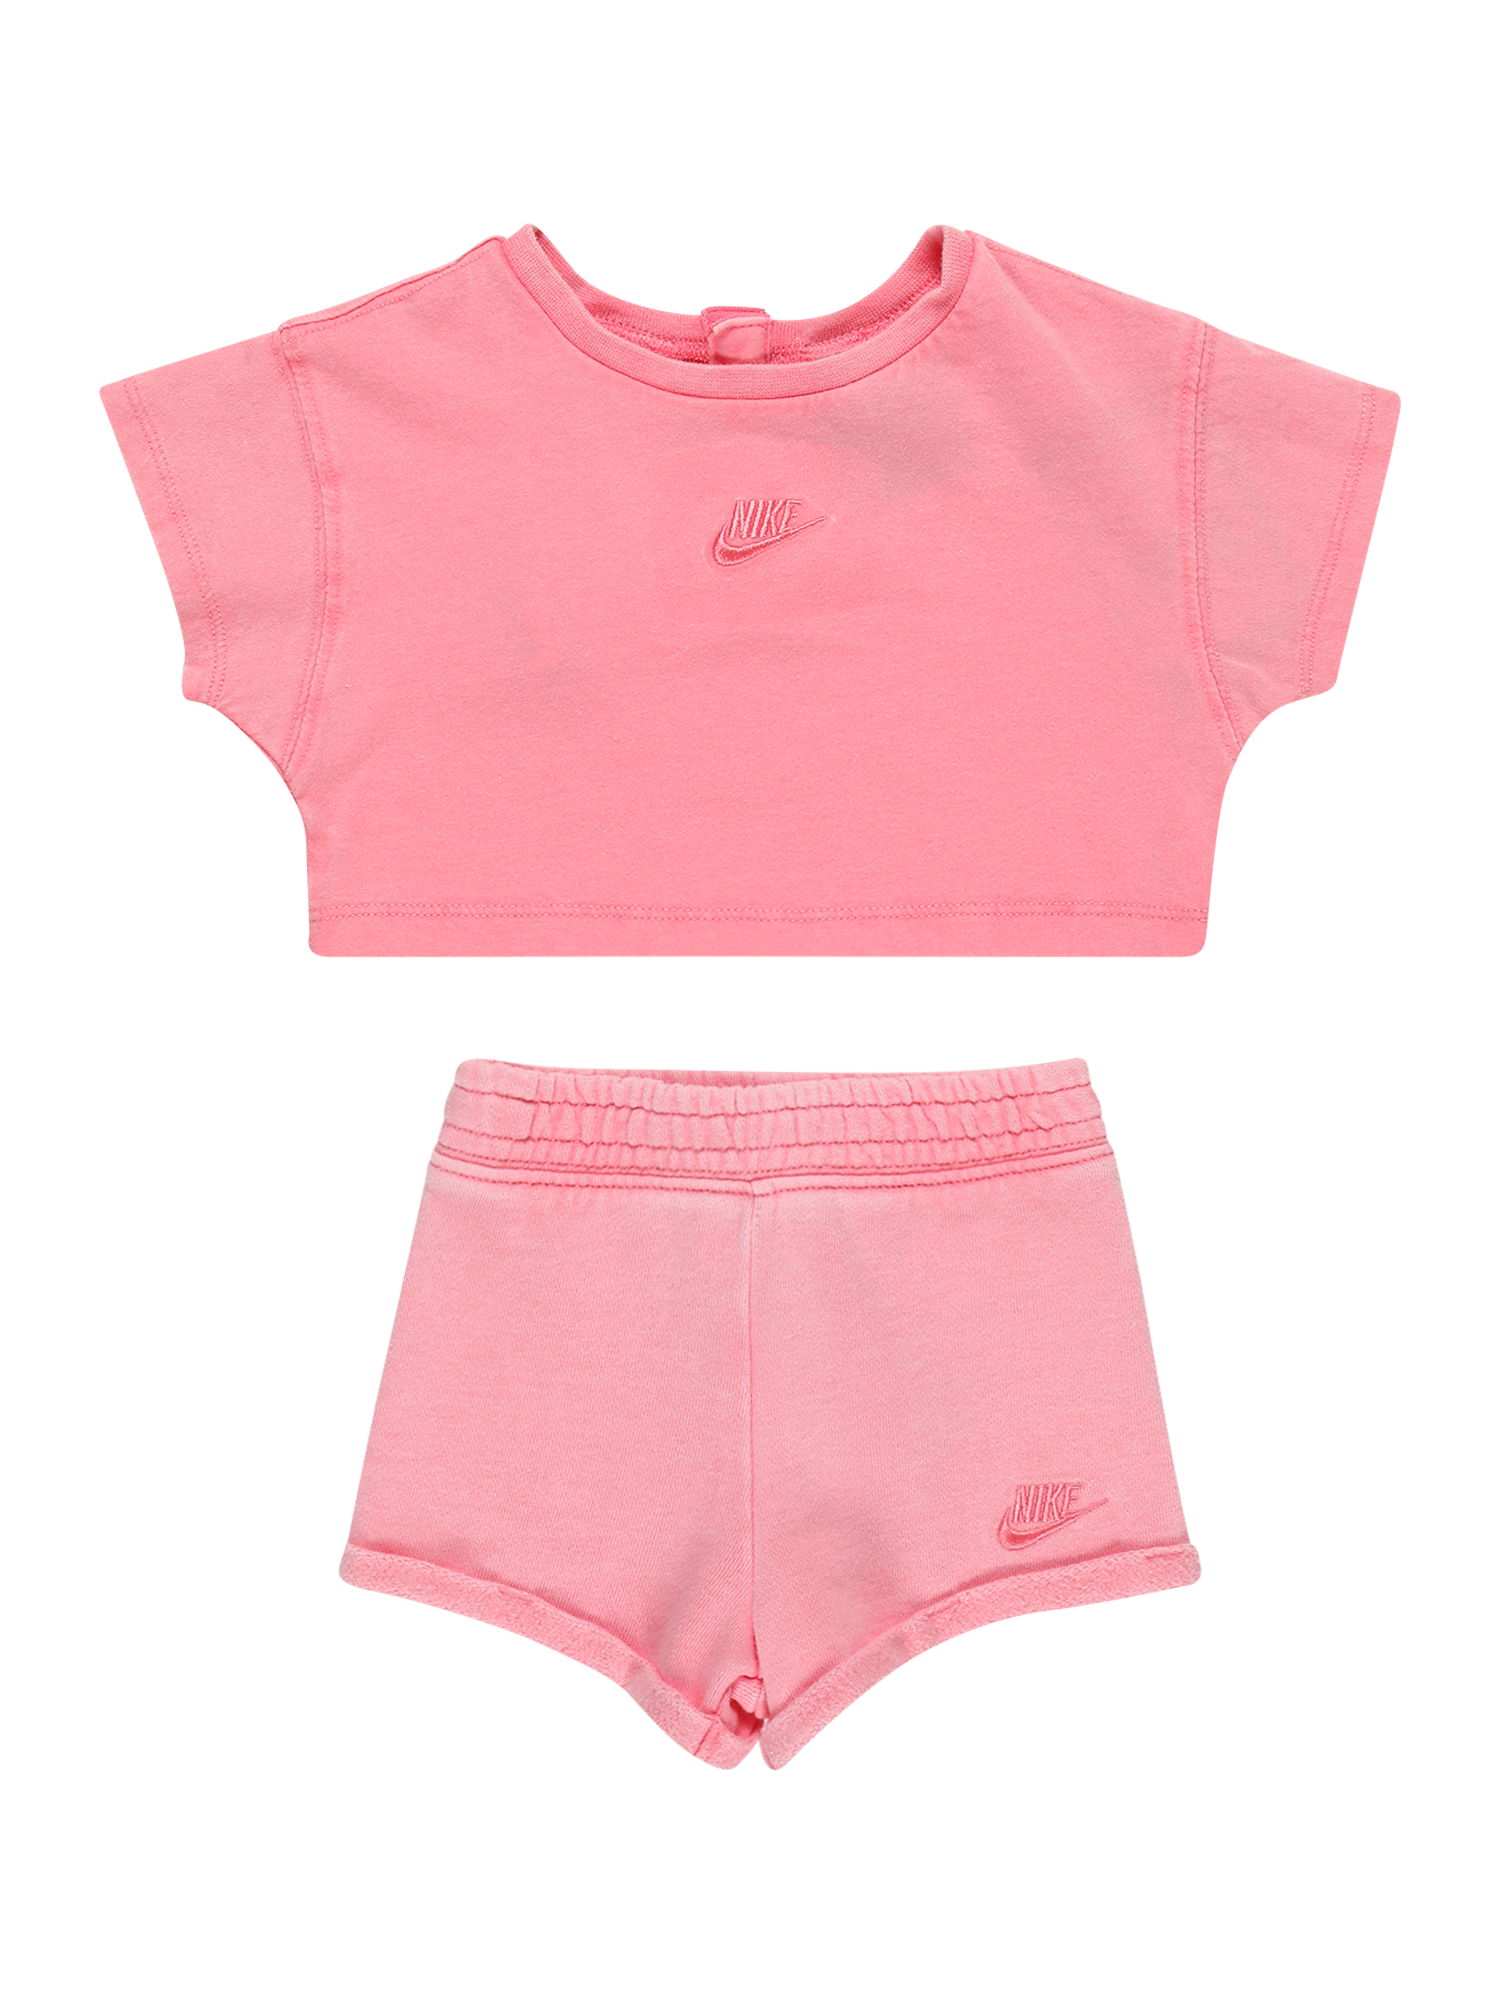 Abbigliamento Bambini Nike Sportswear Set in Rosa 